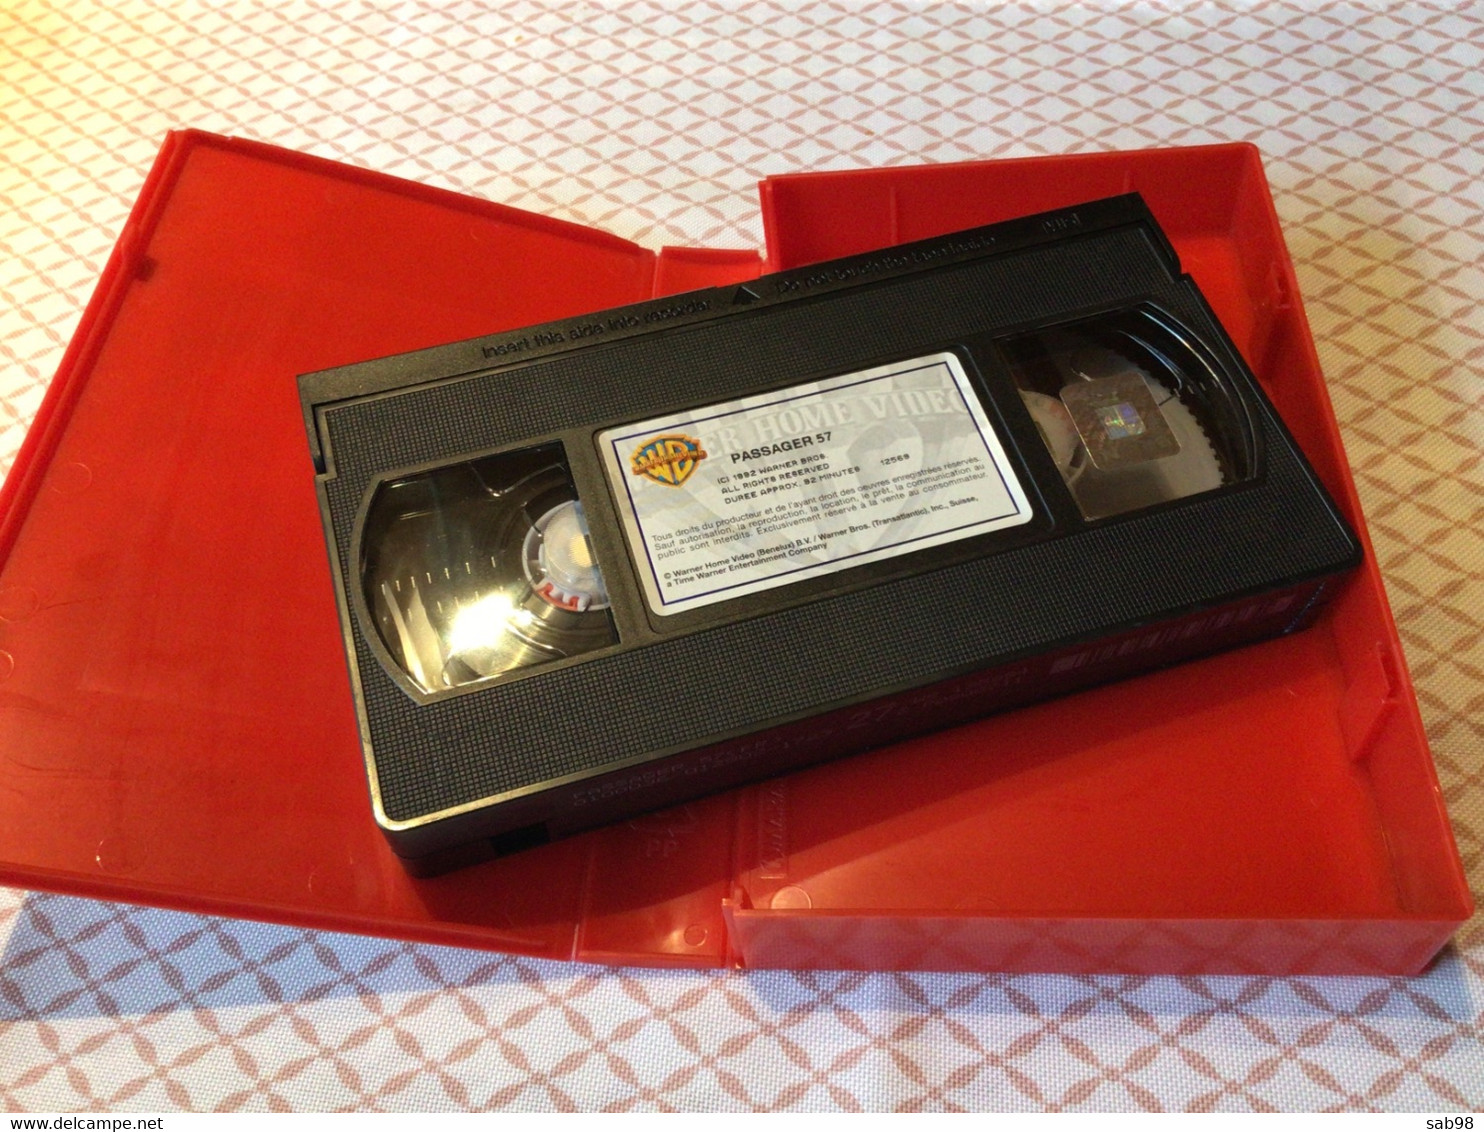 Passager 57 Wesley Snipe VHS Originale Action Collection De 1995  Warner Bros - Azione, Avventura